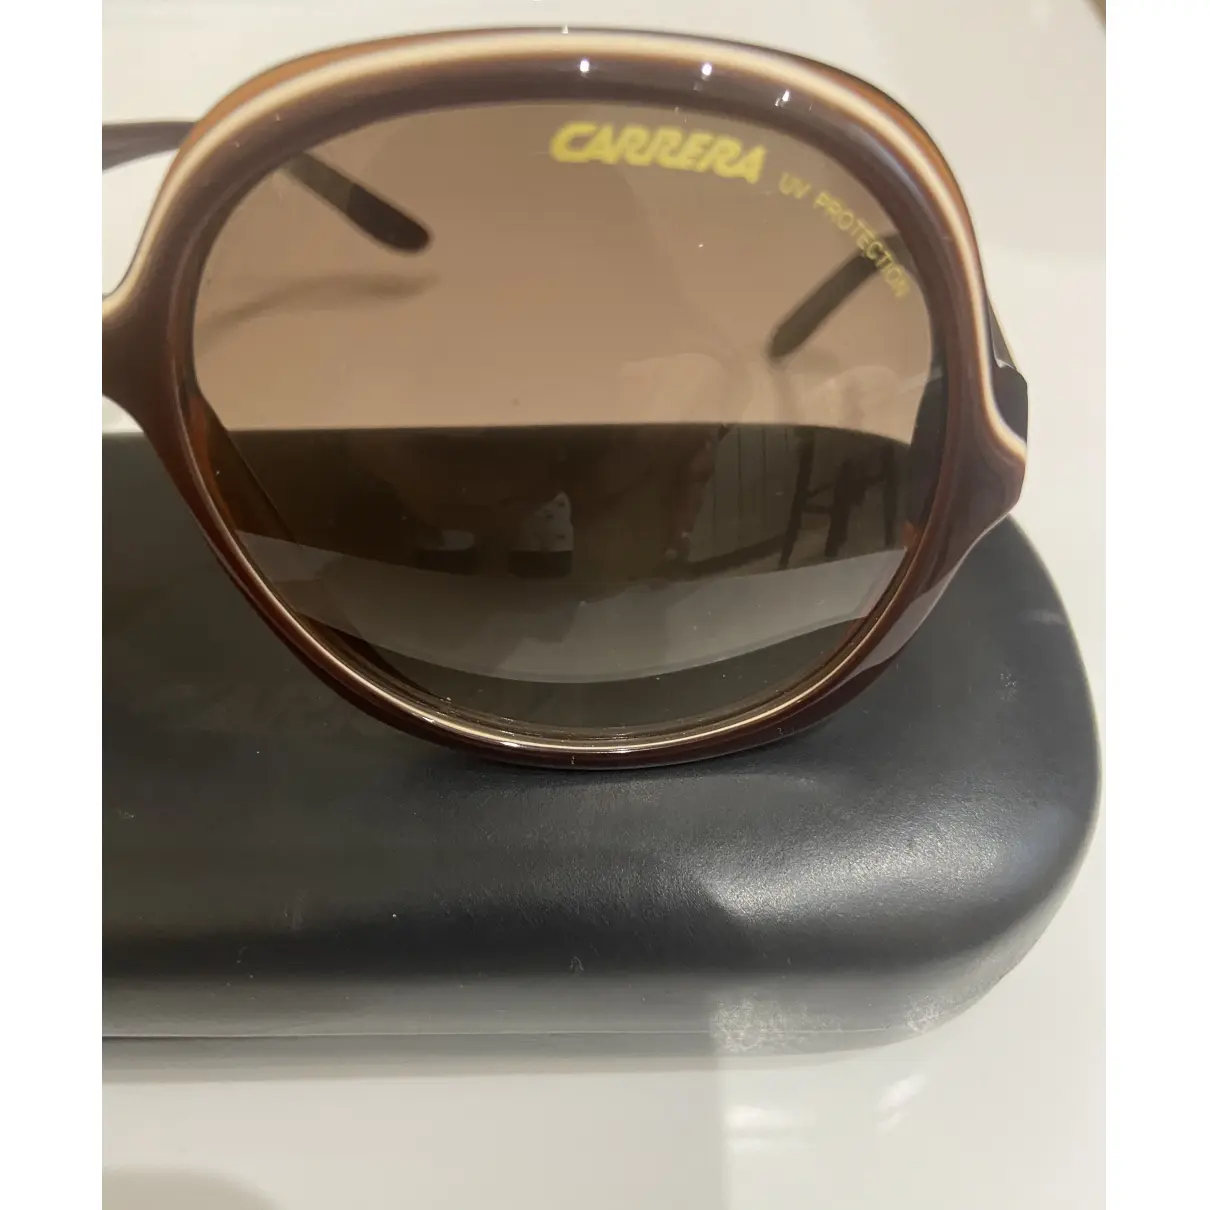 Luxury Carrera Sunglasses Women